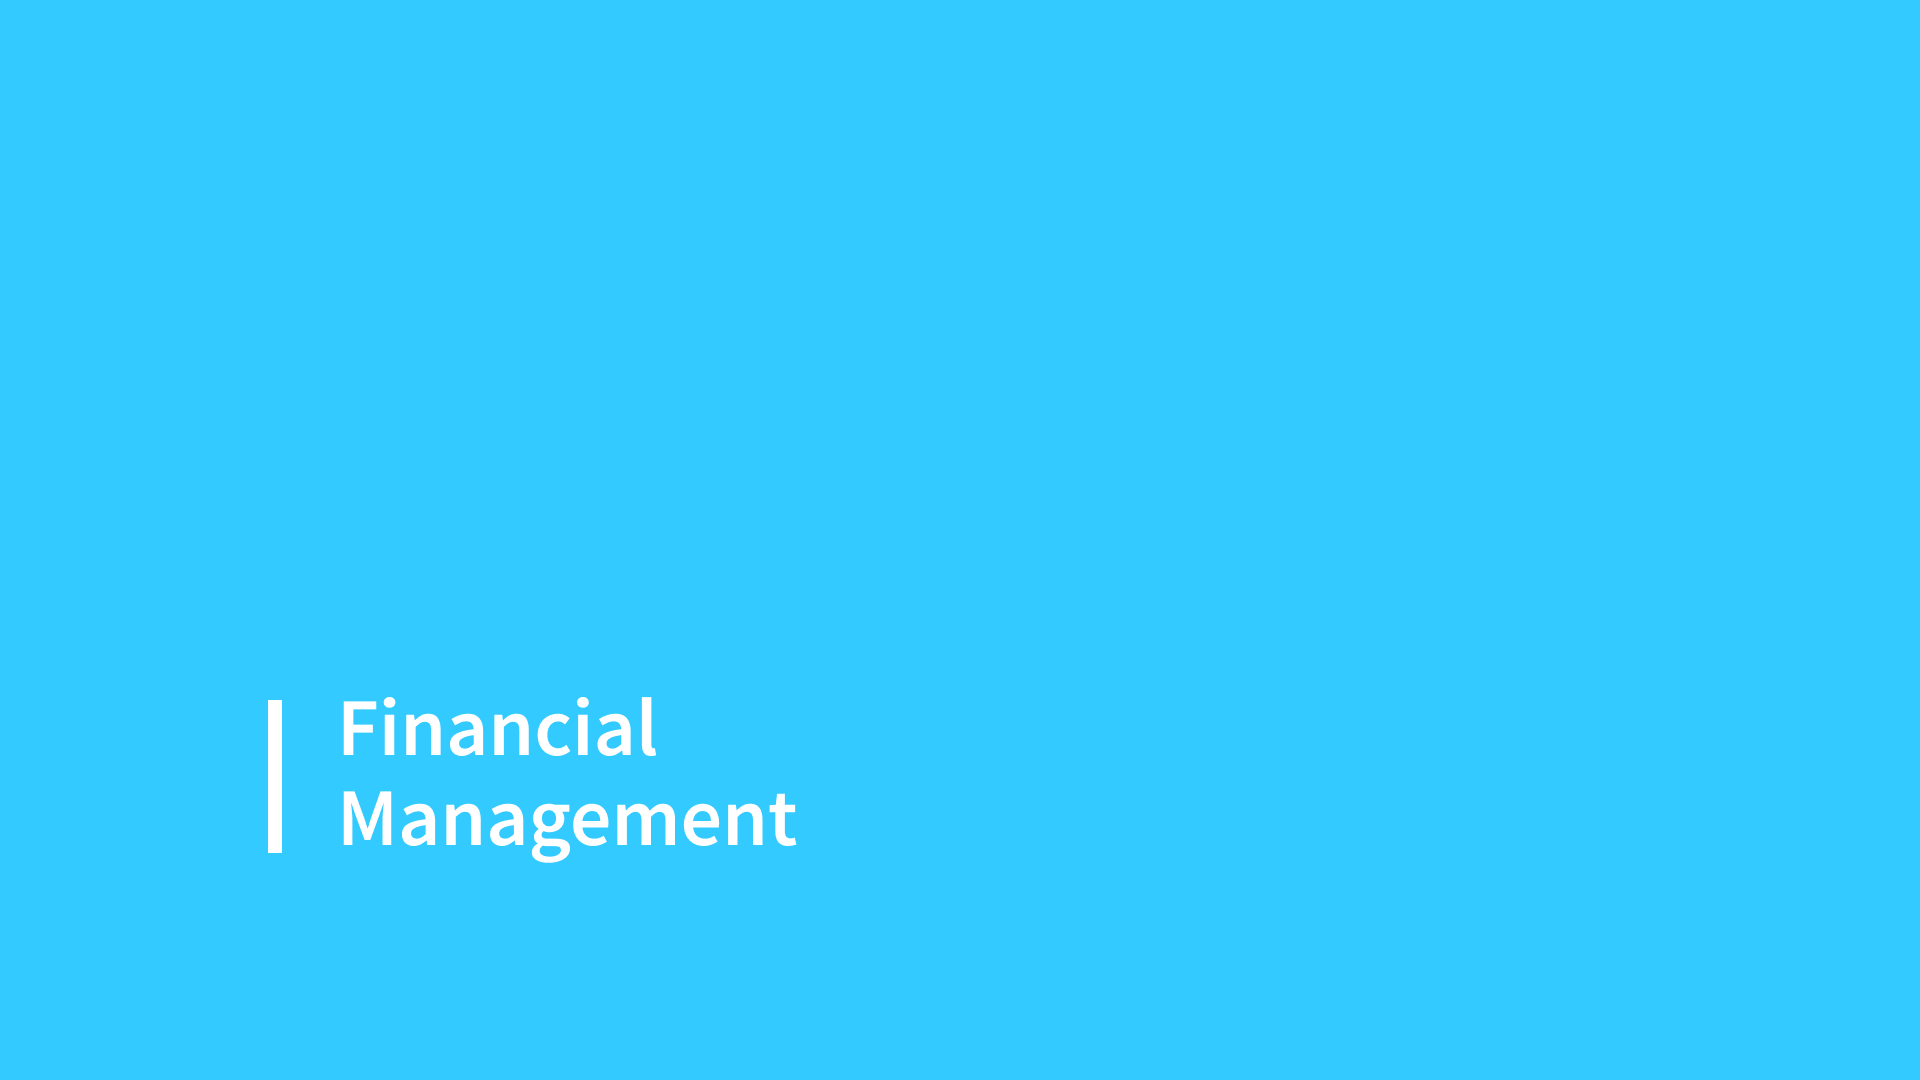 Panorama de la gestión financiera